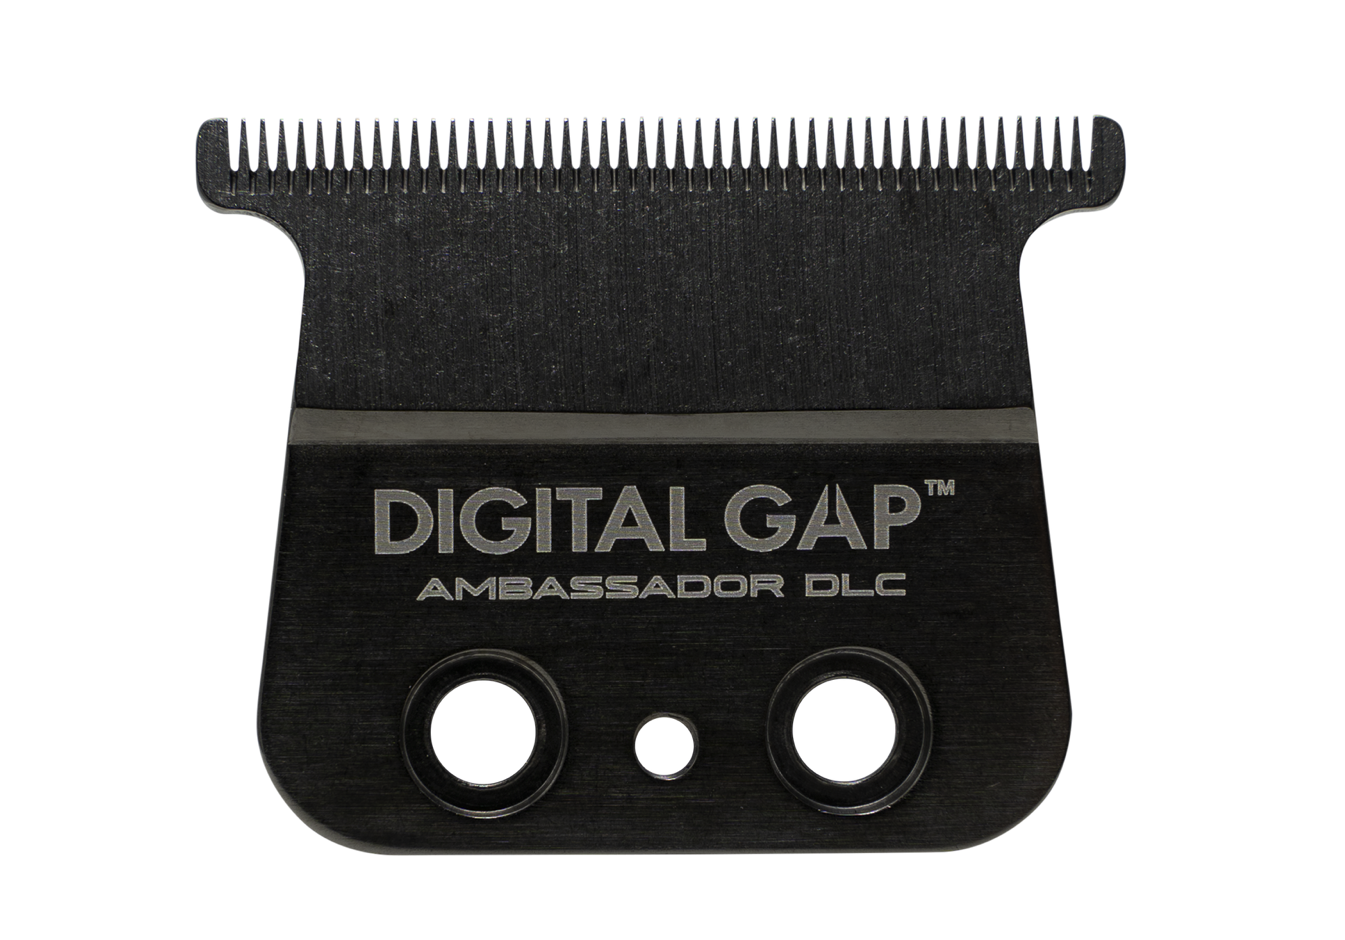 Cocco Digital Gap™ Ambassador DLC Trimmer Blade